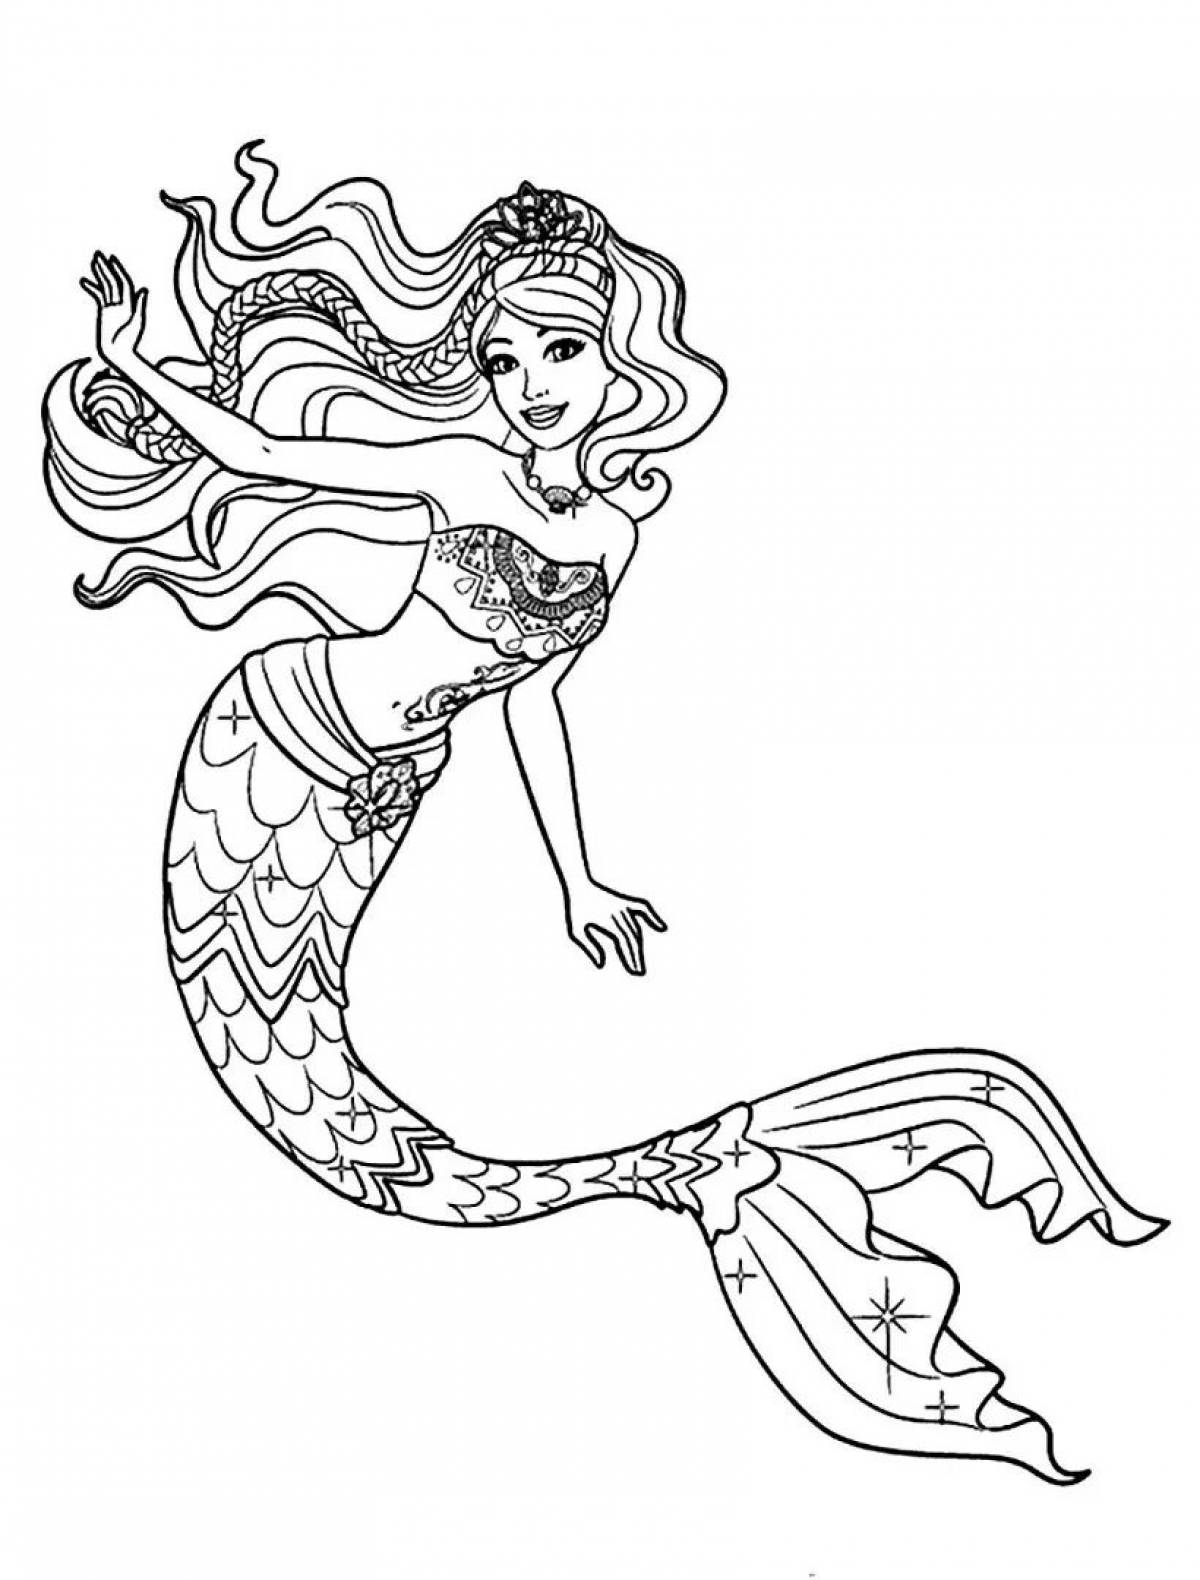 Mermaid pattern #6